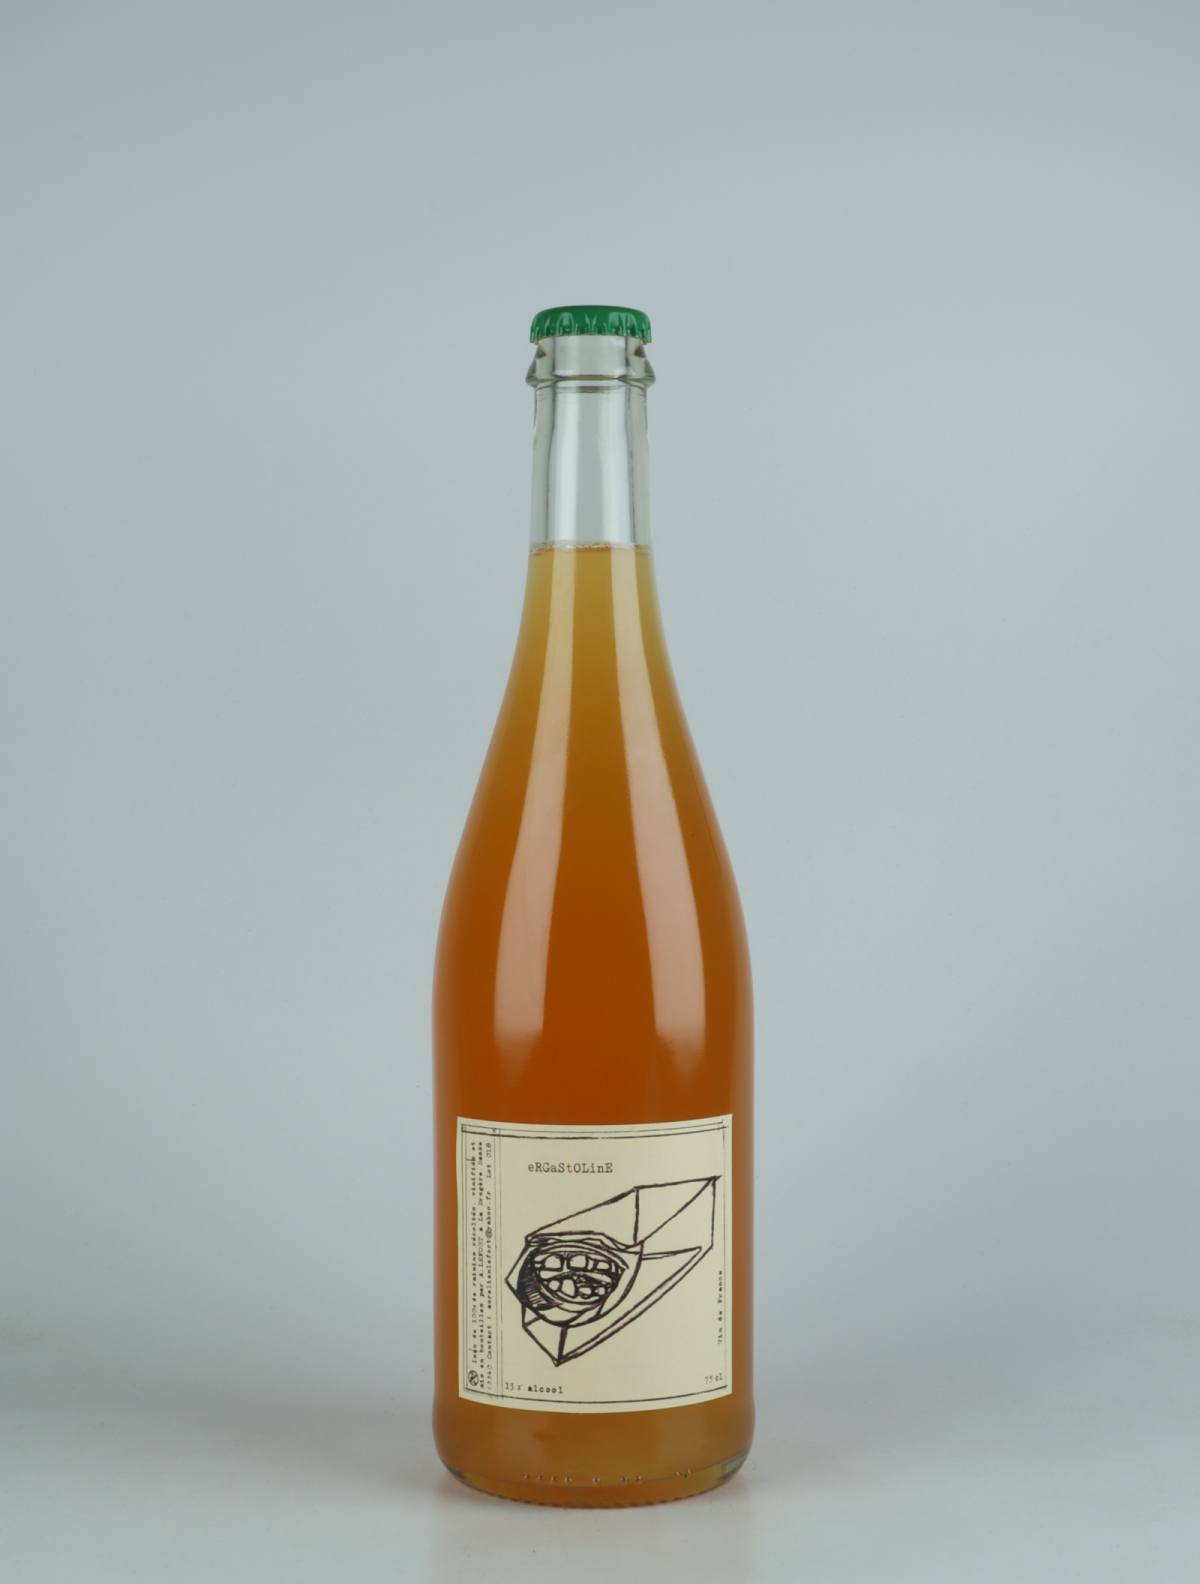 A bottle 2018 Ergastoline Orange wine from Aurélien Lefort, Auvergne in France